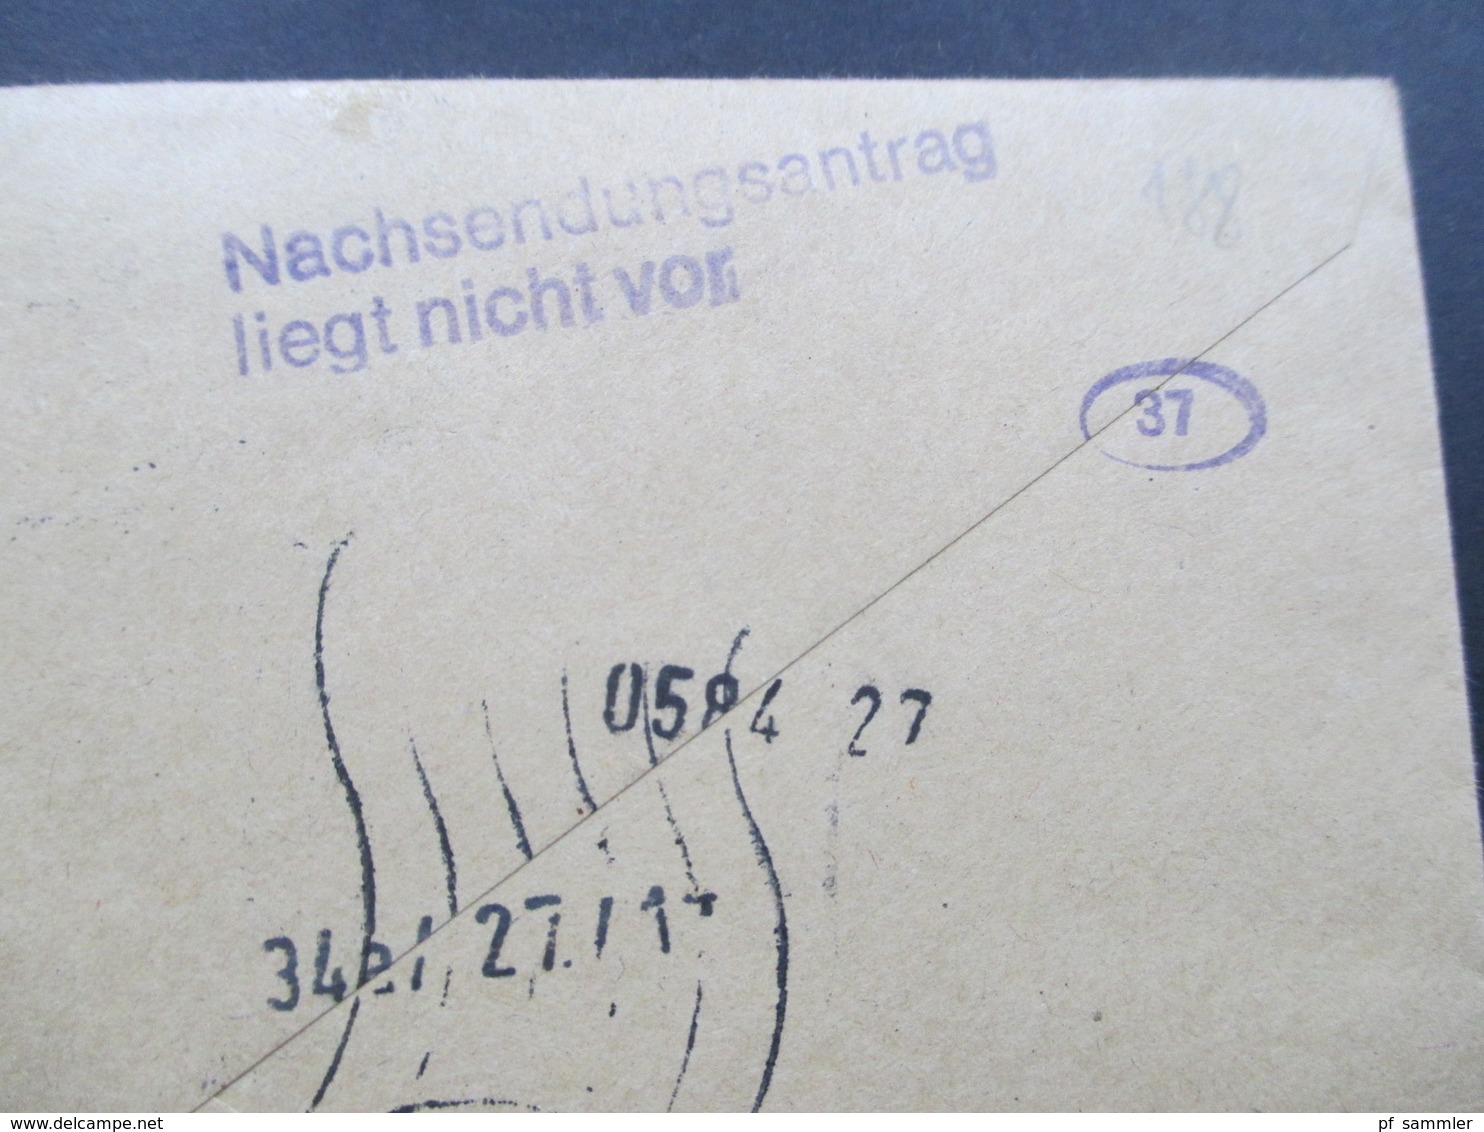 Berlin 1977 Eilbrief Mit Berlin ZD 4x W43 Als 12er Block Aus MHB. Viele Stempel! Nachsendeantrag Liegt Nicht Vor. - Briefe U. Dokumente